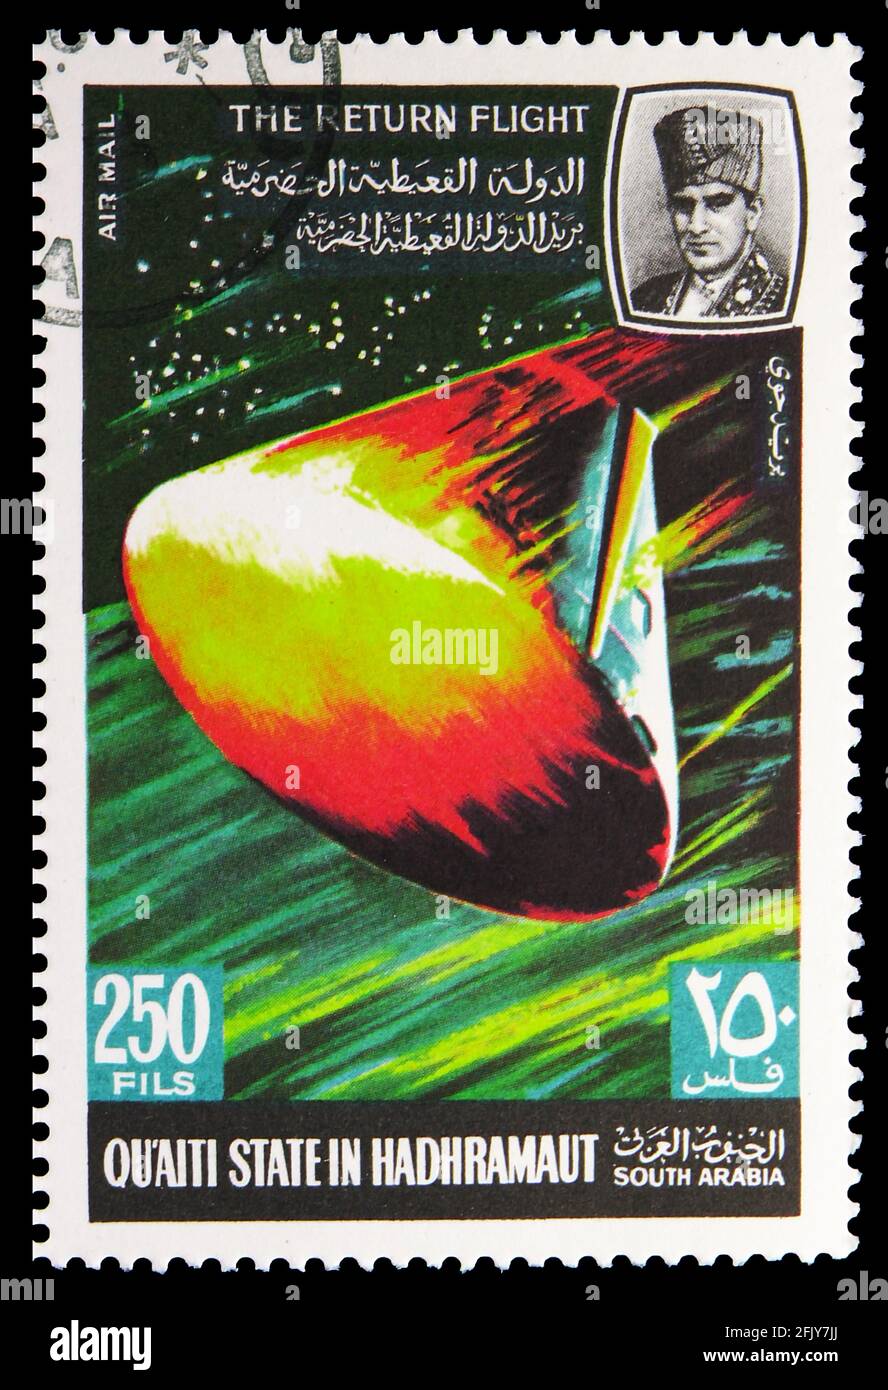 MOSCOU, RUSSIE - 16 NOVEMBRE 2019 : timbre-poste imprimé à Aden - Protectorats montre les programmes et projets de la recherche spatiale lunaire, Qu'aiti S. Banque D'Images